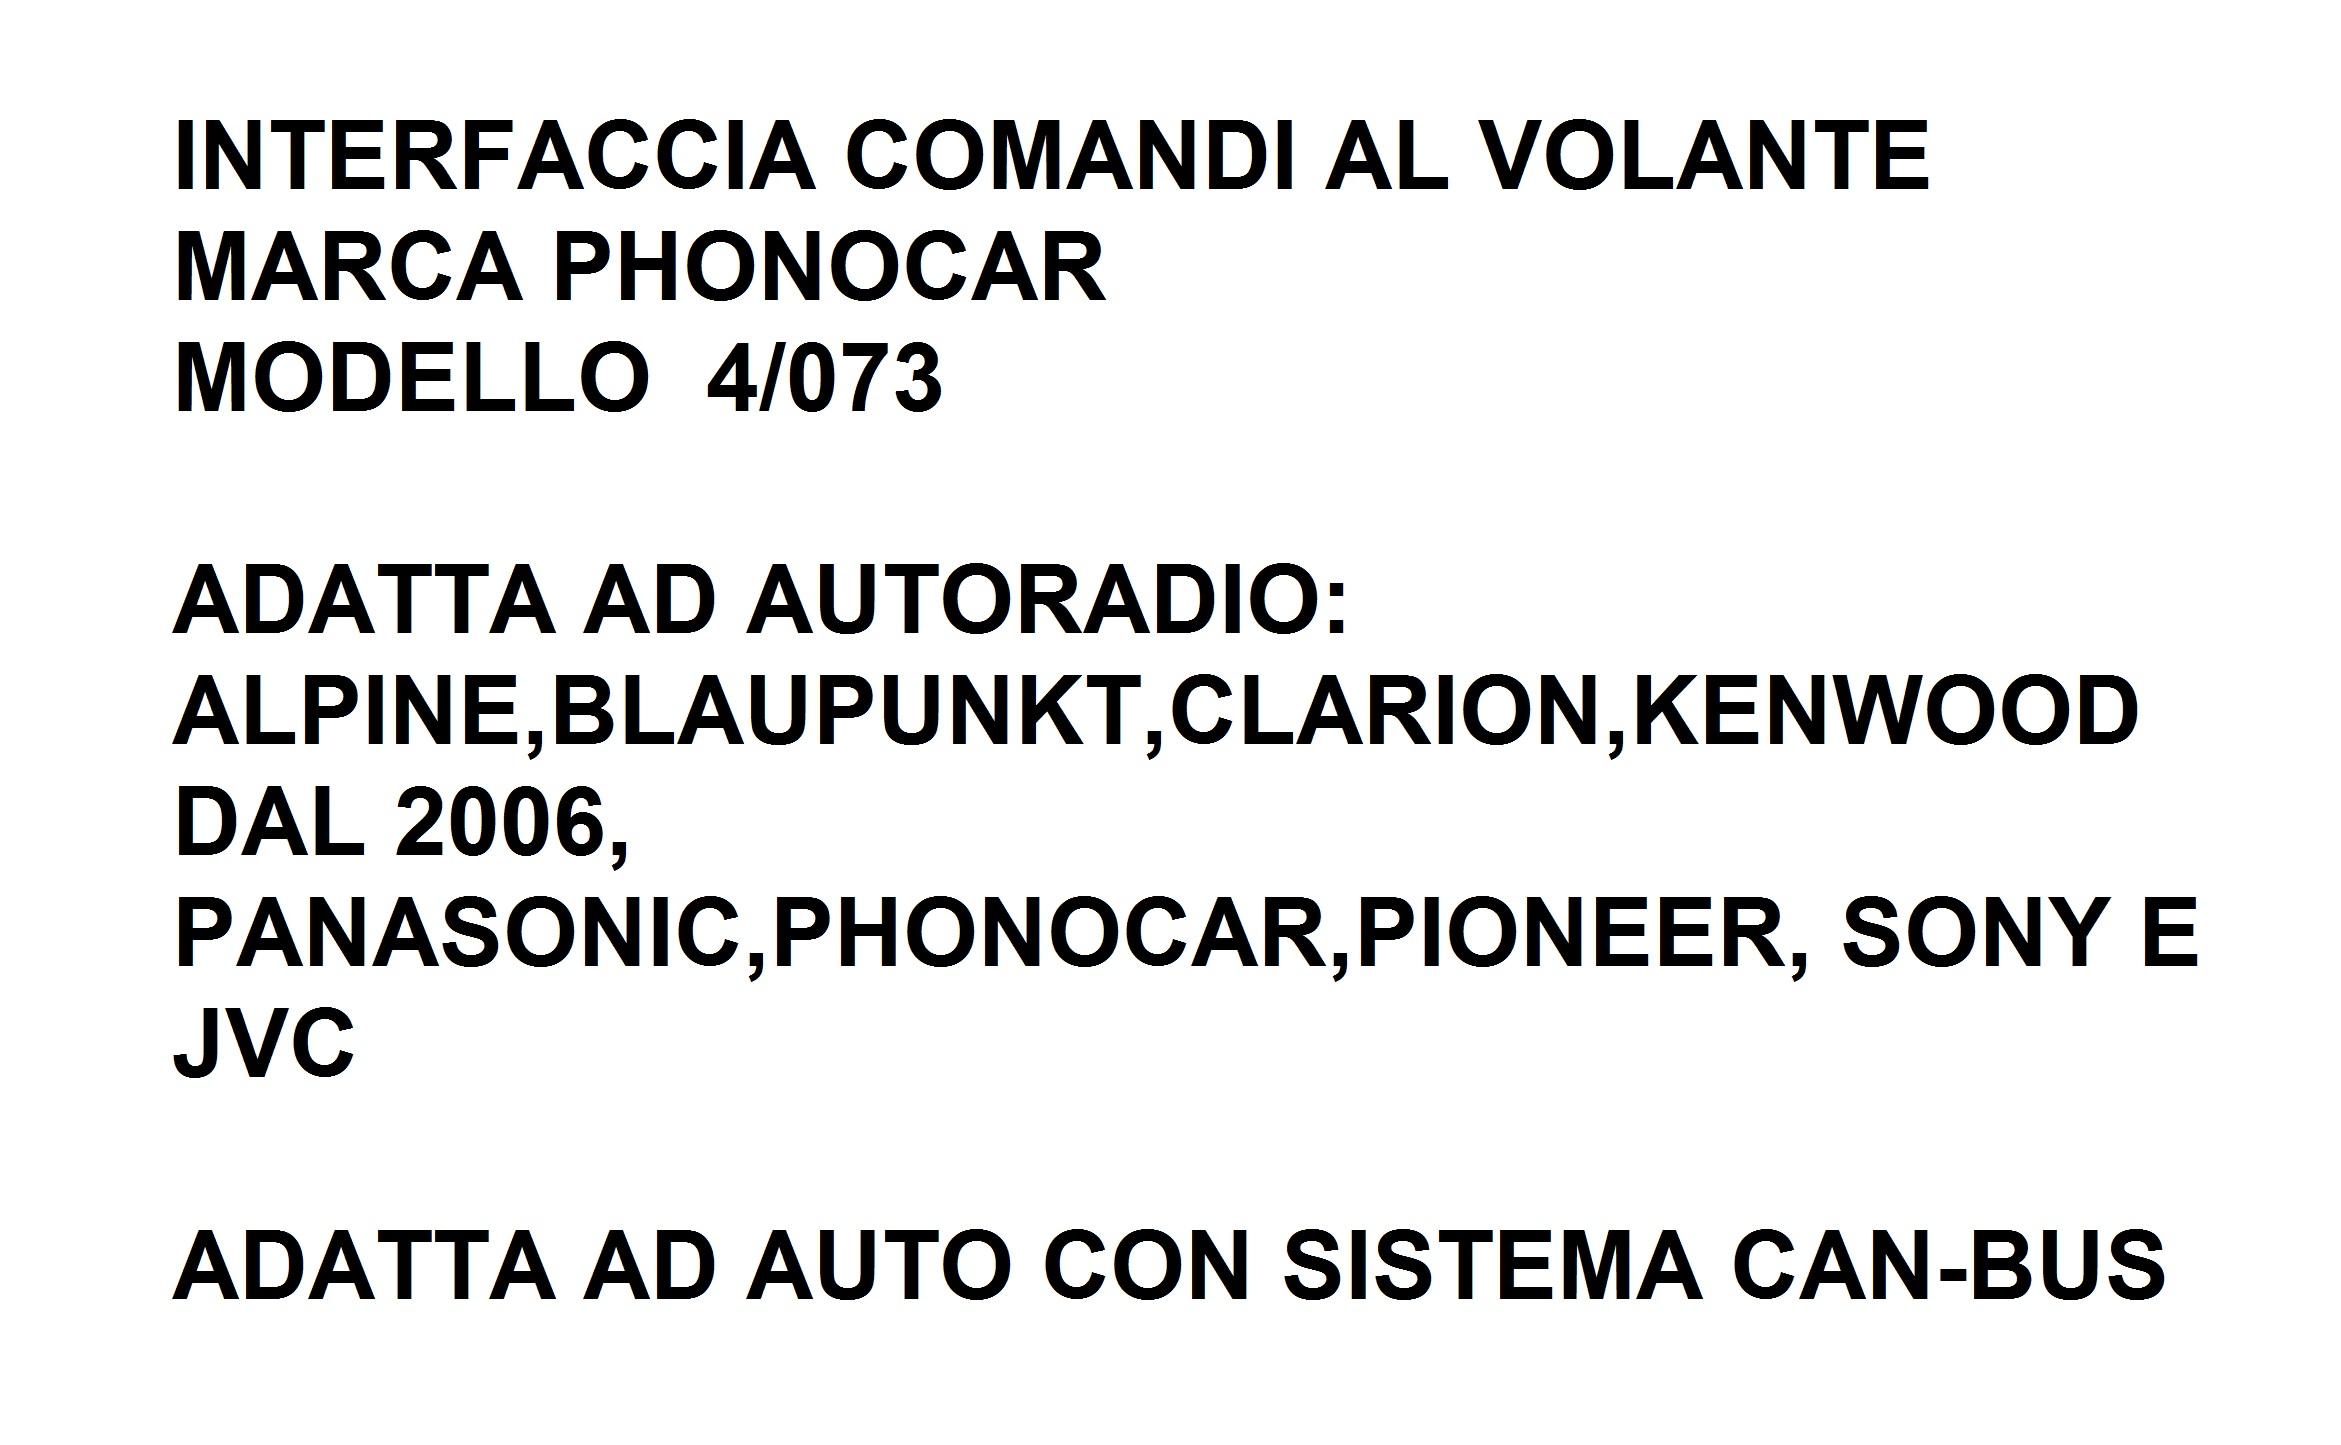 9550 - ALFA 159 DAL 2005 INTERFACCIA CAN-BUS&COMANDI AL VOLANTE 4/073 PHONOCAR